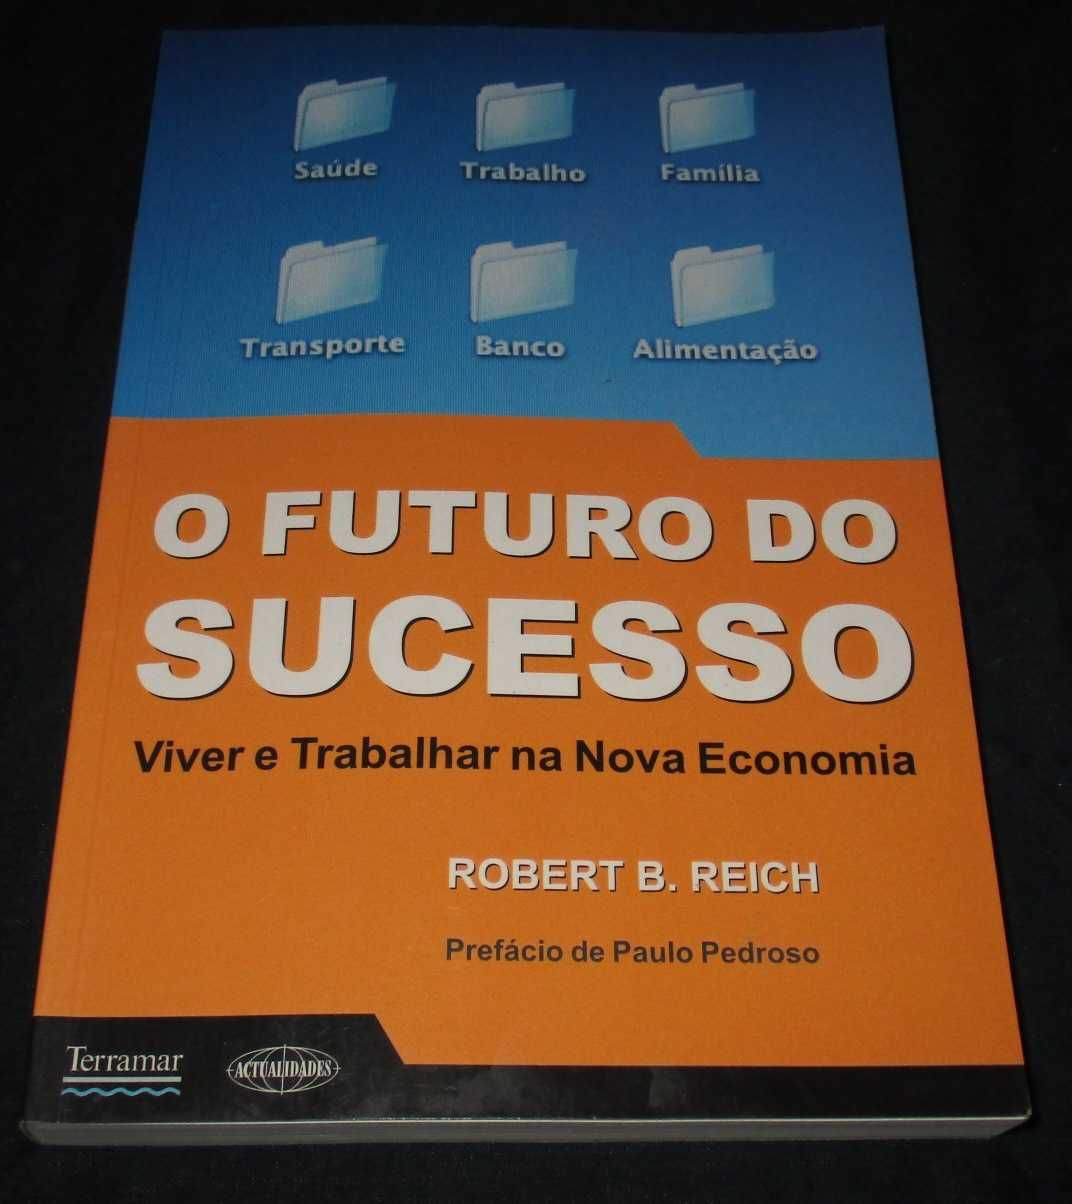 Livro O futuro do sucesso Robert Reich Terramar